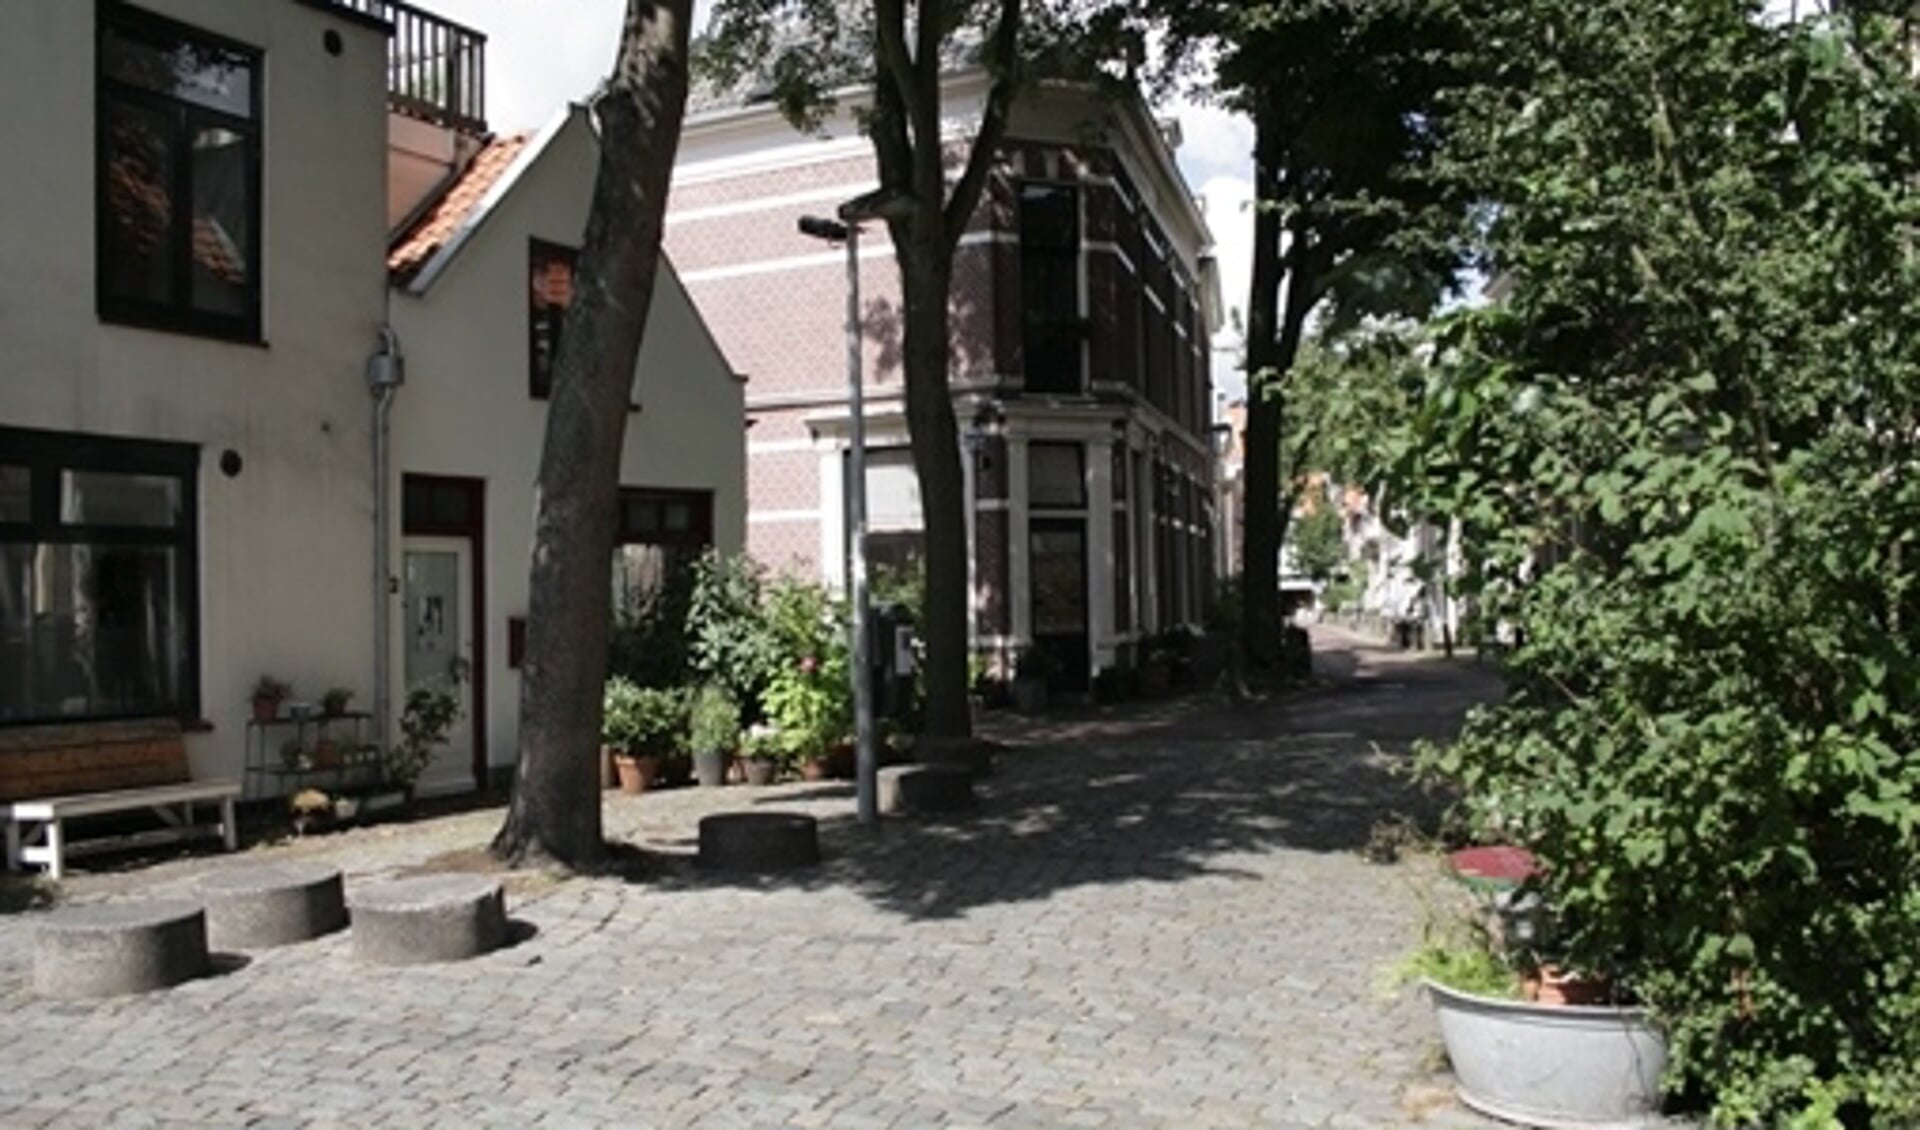 Leer meer over de wijken en hofjes in Haarlem.